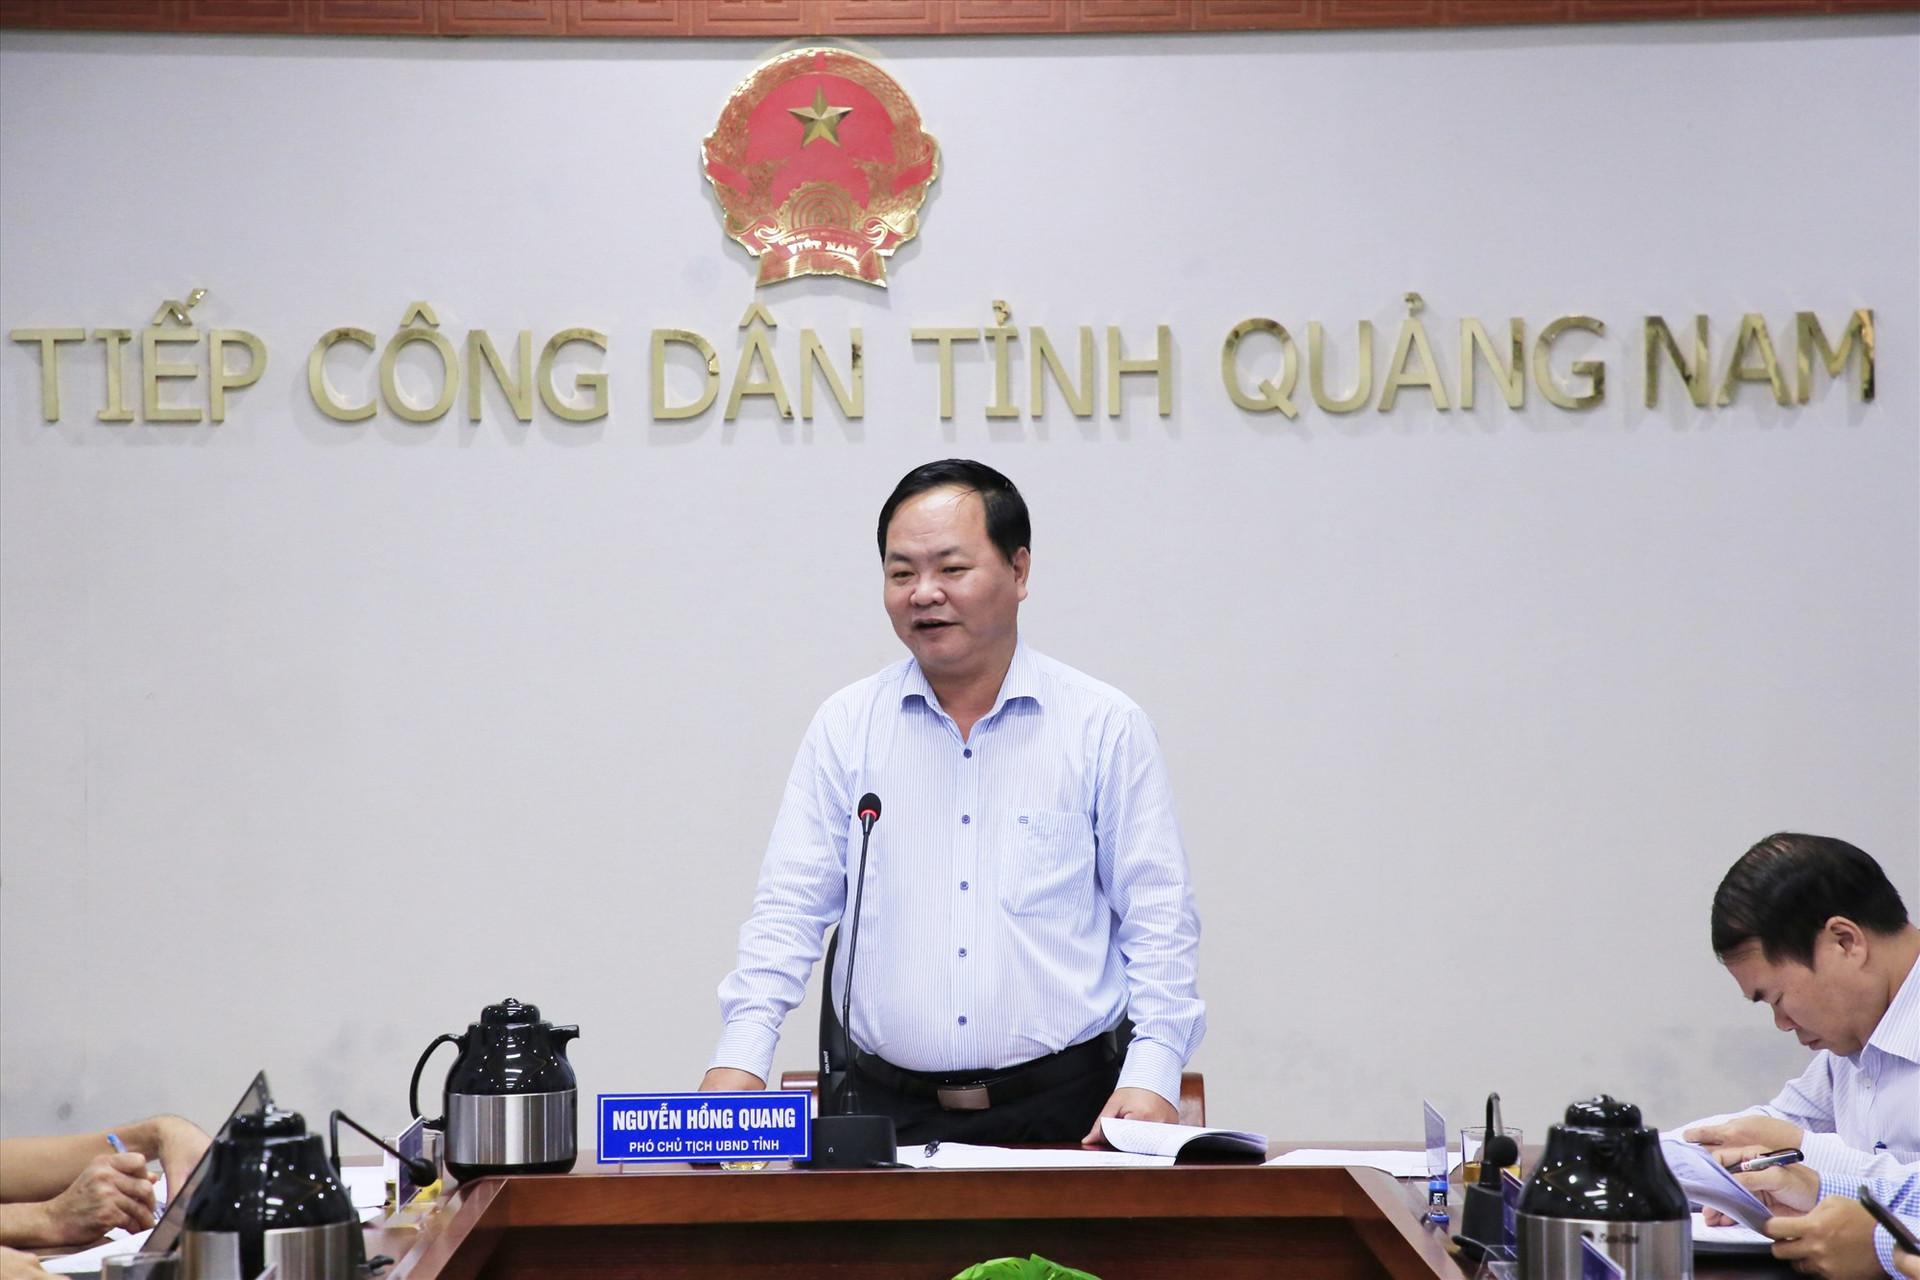 Sáng nay 20/10, Phó Chủ tịch UBND tỉnh Nguyễn Hồng Quang chủ trì buổi tiếp dân định kỳ tháng 10/2022 của UBND tỉnh. Ảnh: N.Đ